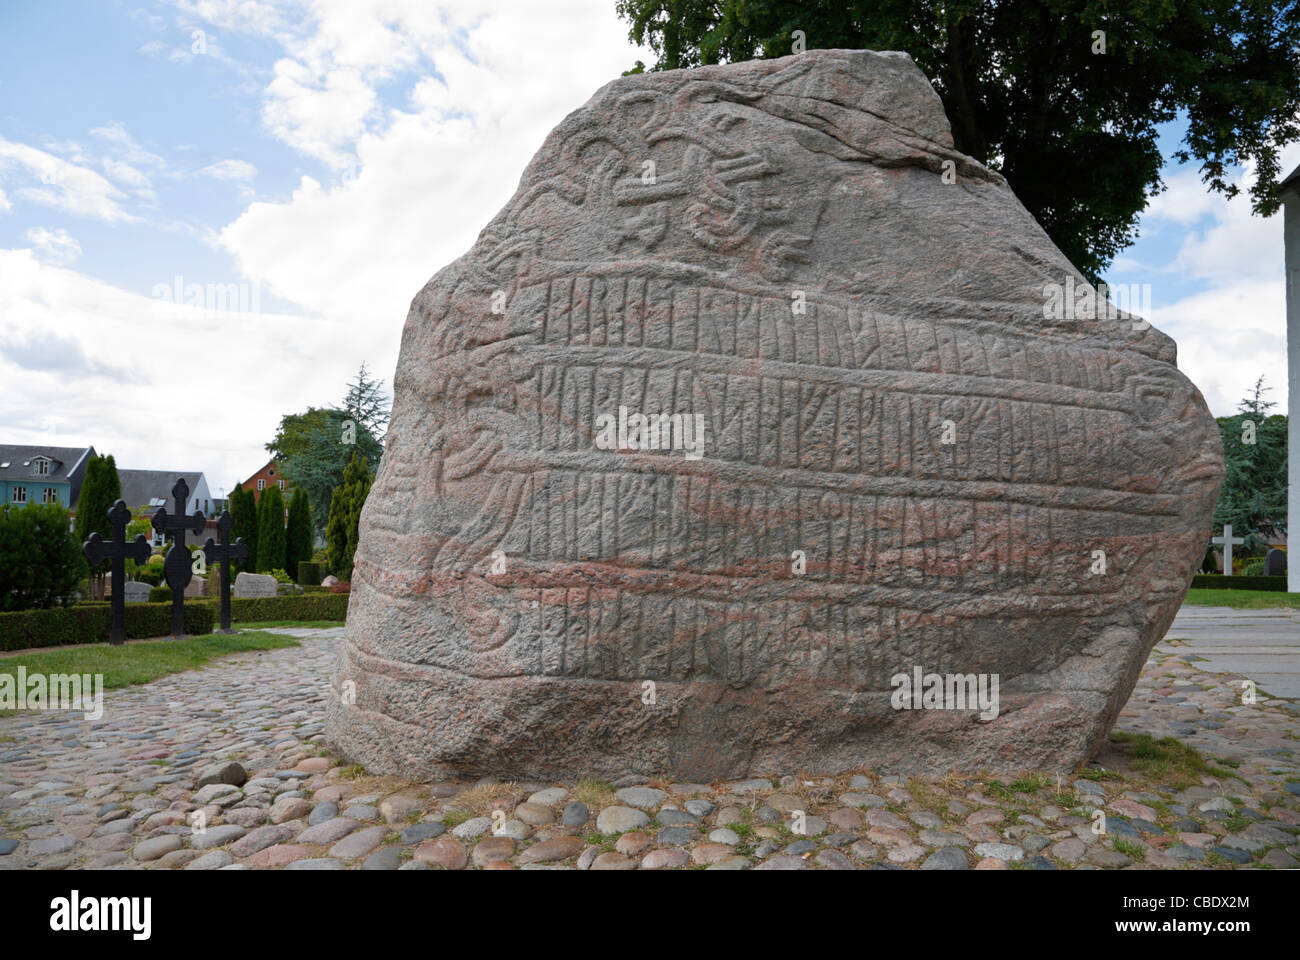 Runic Inschrift auf dem großen Jelling rune Stein aus dem zehnten Jahrhundert von König Harald Bluetooth in Jelling. Abbildung von Jesus auf der anderen Seite Stockfoto